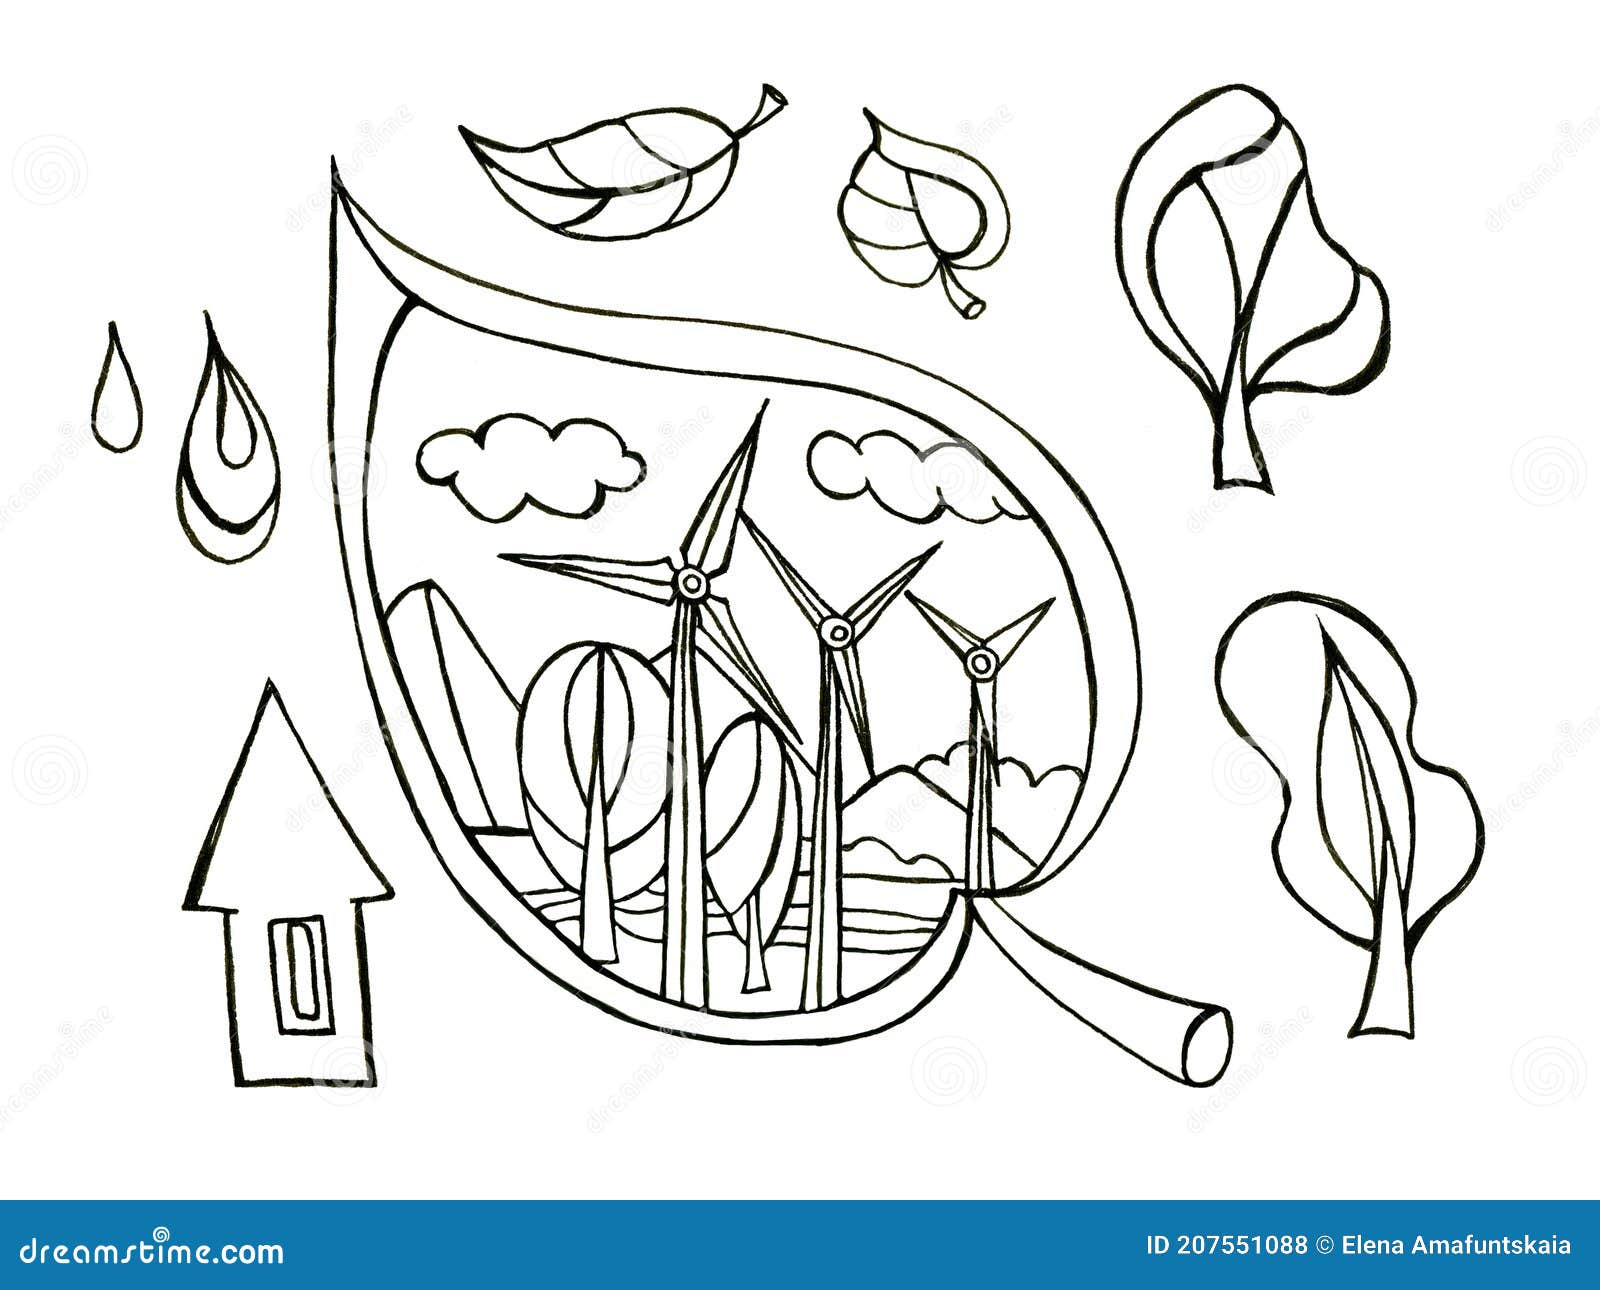 Ilustración De Ahorro De Energía Dibujo a Mano Con árboles De Hojas De  Molino De Viento. Stock de ilustración - Ilustración de cuerda, agua:  207551088